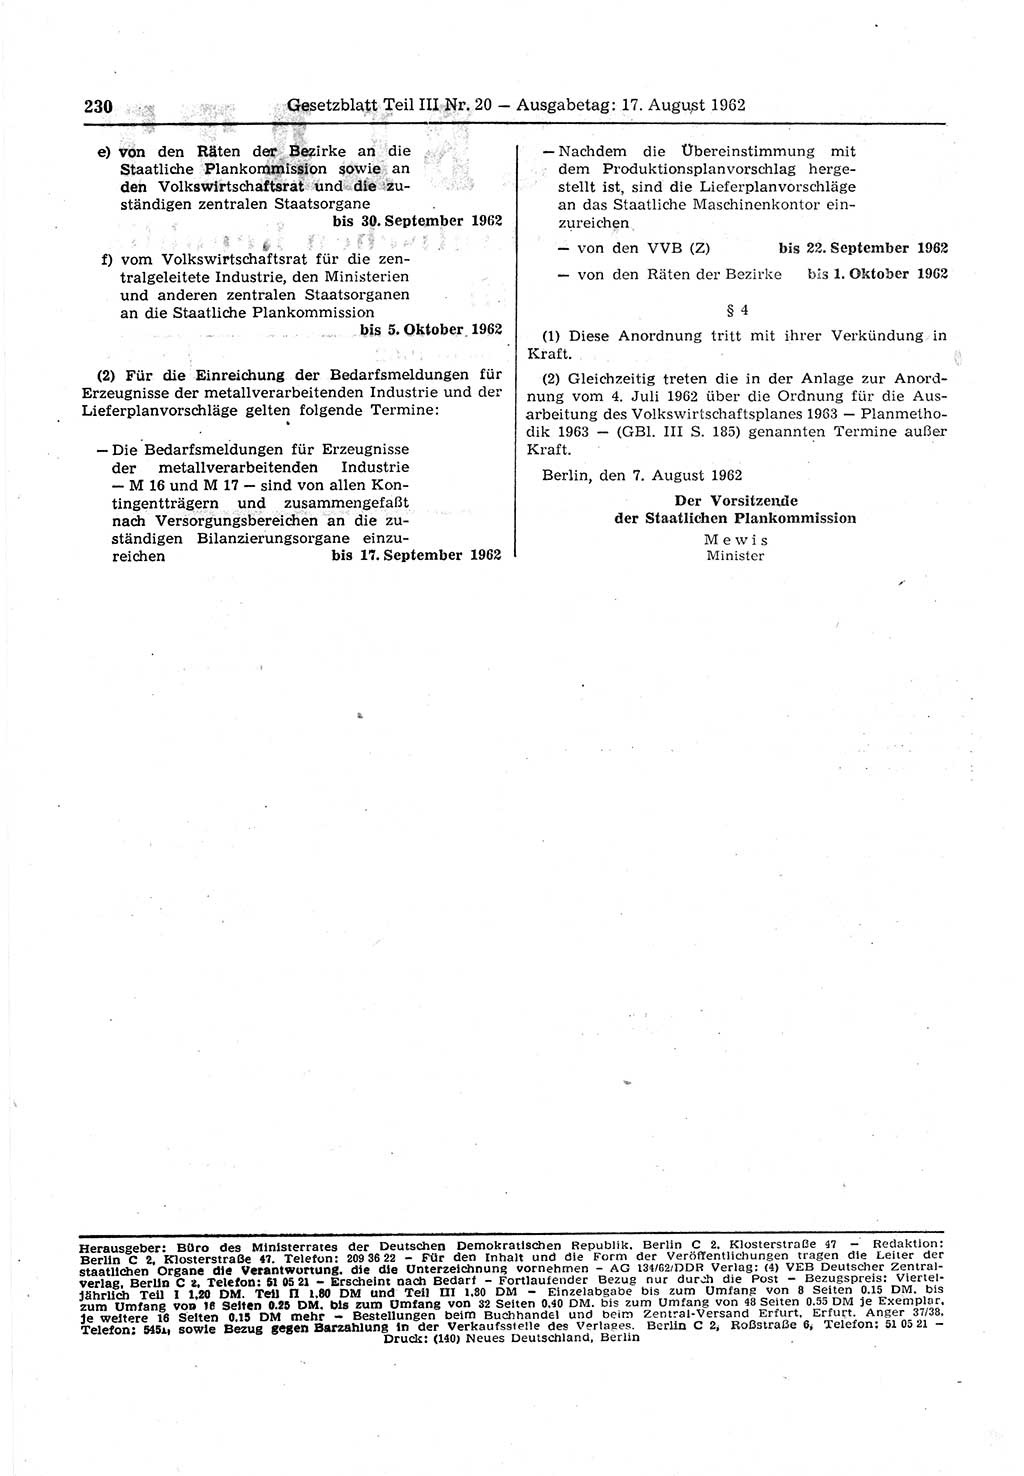 Gesetzblatt (GBl.) der Deutschen Demokratischen Republik (DDR) Teil ⅠⅠⅠ 1962, Seite 230 (GBl. DDR ⅠⅠⅠ 1962, S. 230)